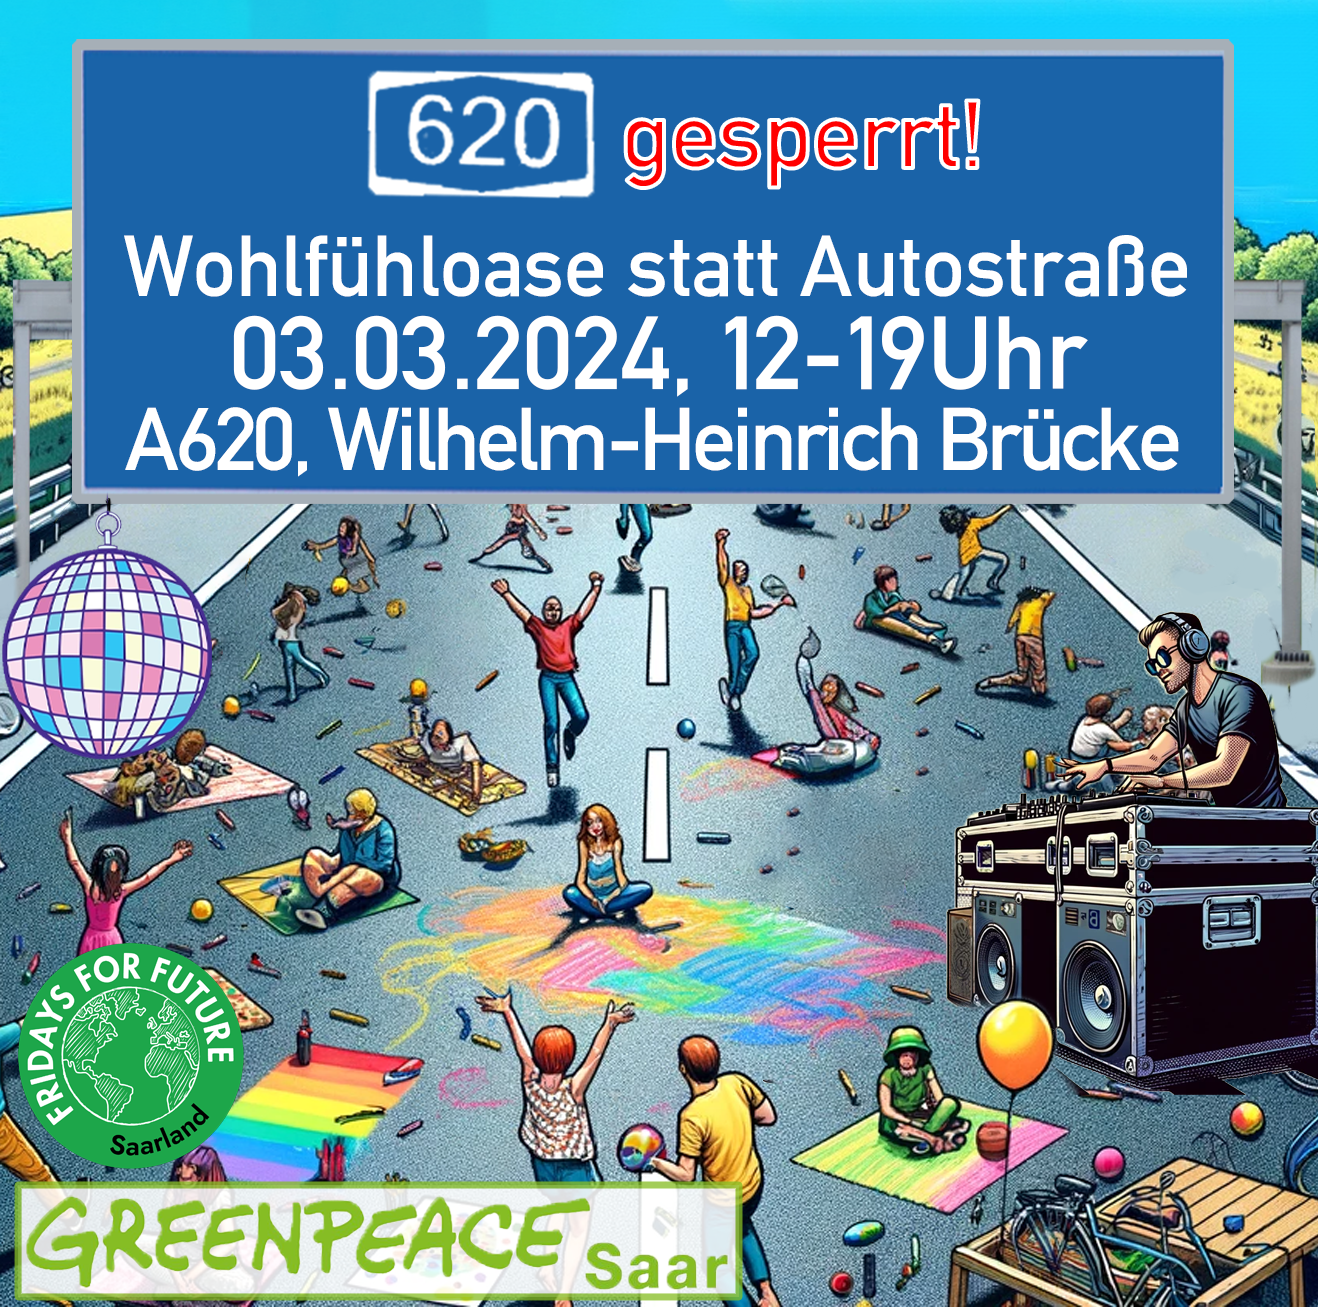 You are currently viewing Pressemitteilung: Wohlfühloase statt Autostraße am Sonntag 3.3.2024 auf der A620